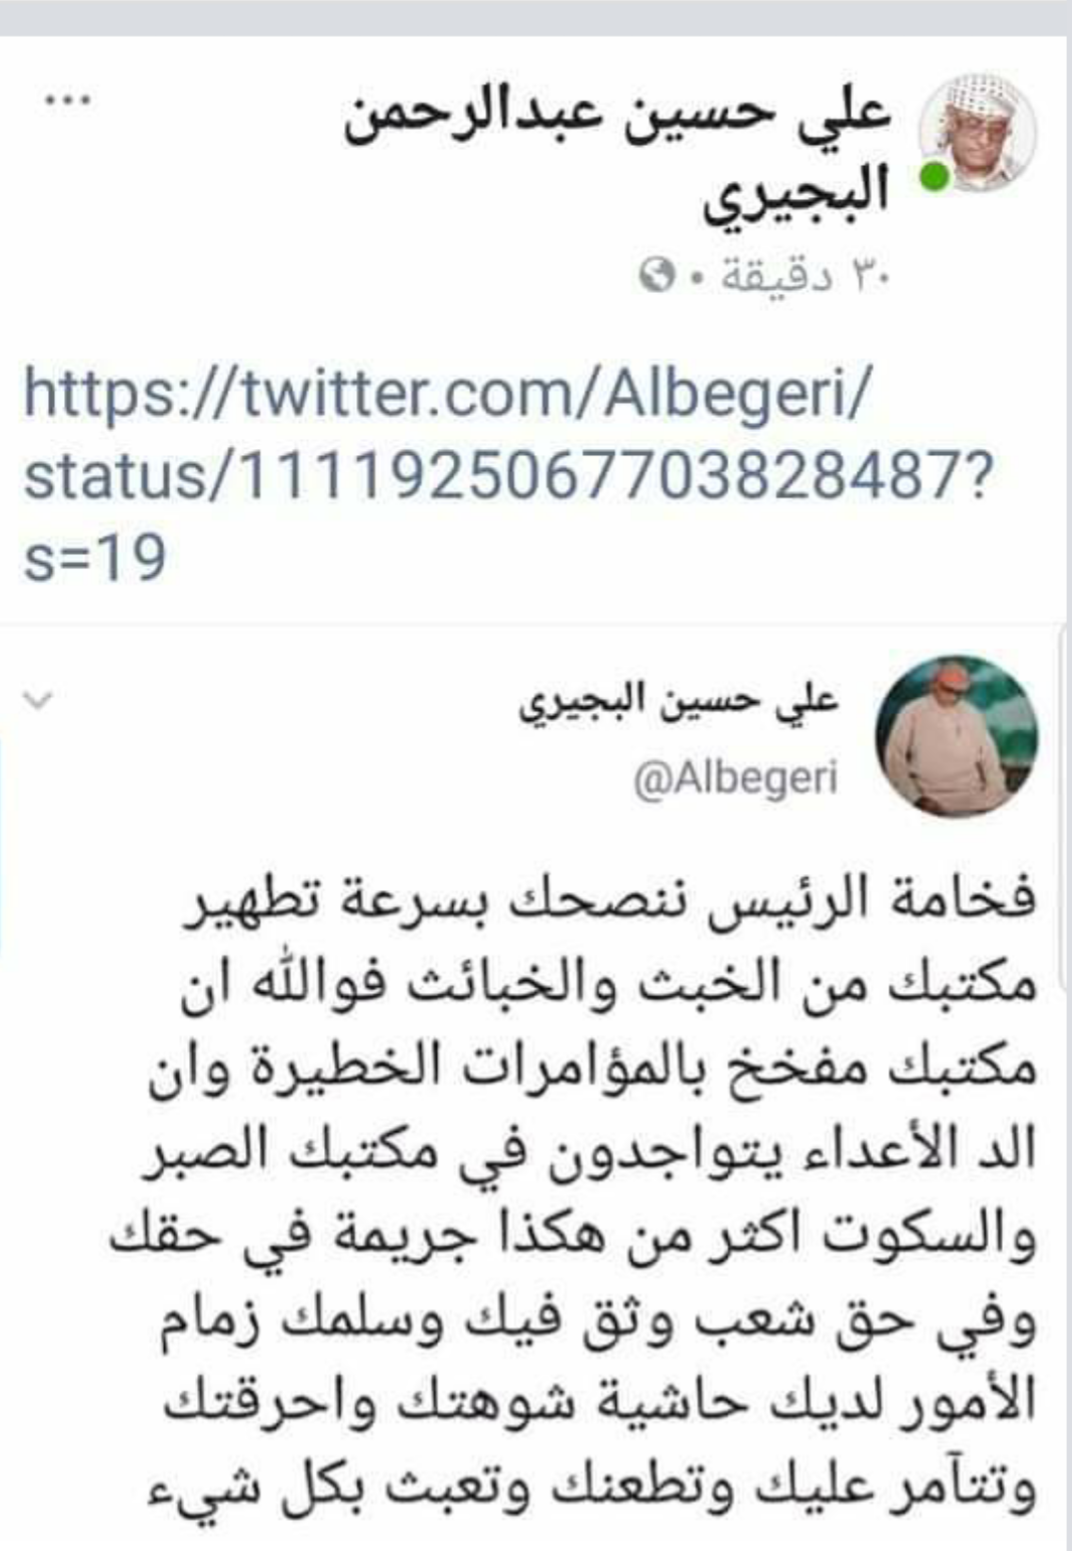 عضو في مجلس الشورى ينصح الرئيس هادي بتطهير مكتبه من الخبث والخبائث ومن المؤامرات الخبيثة